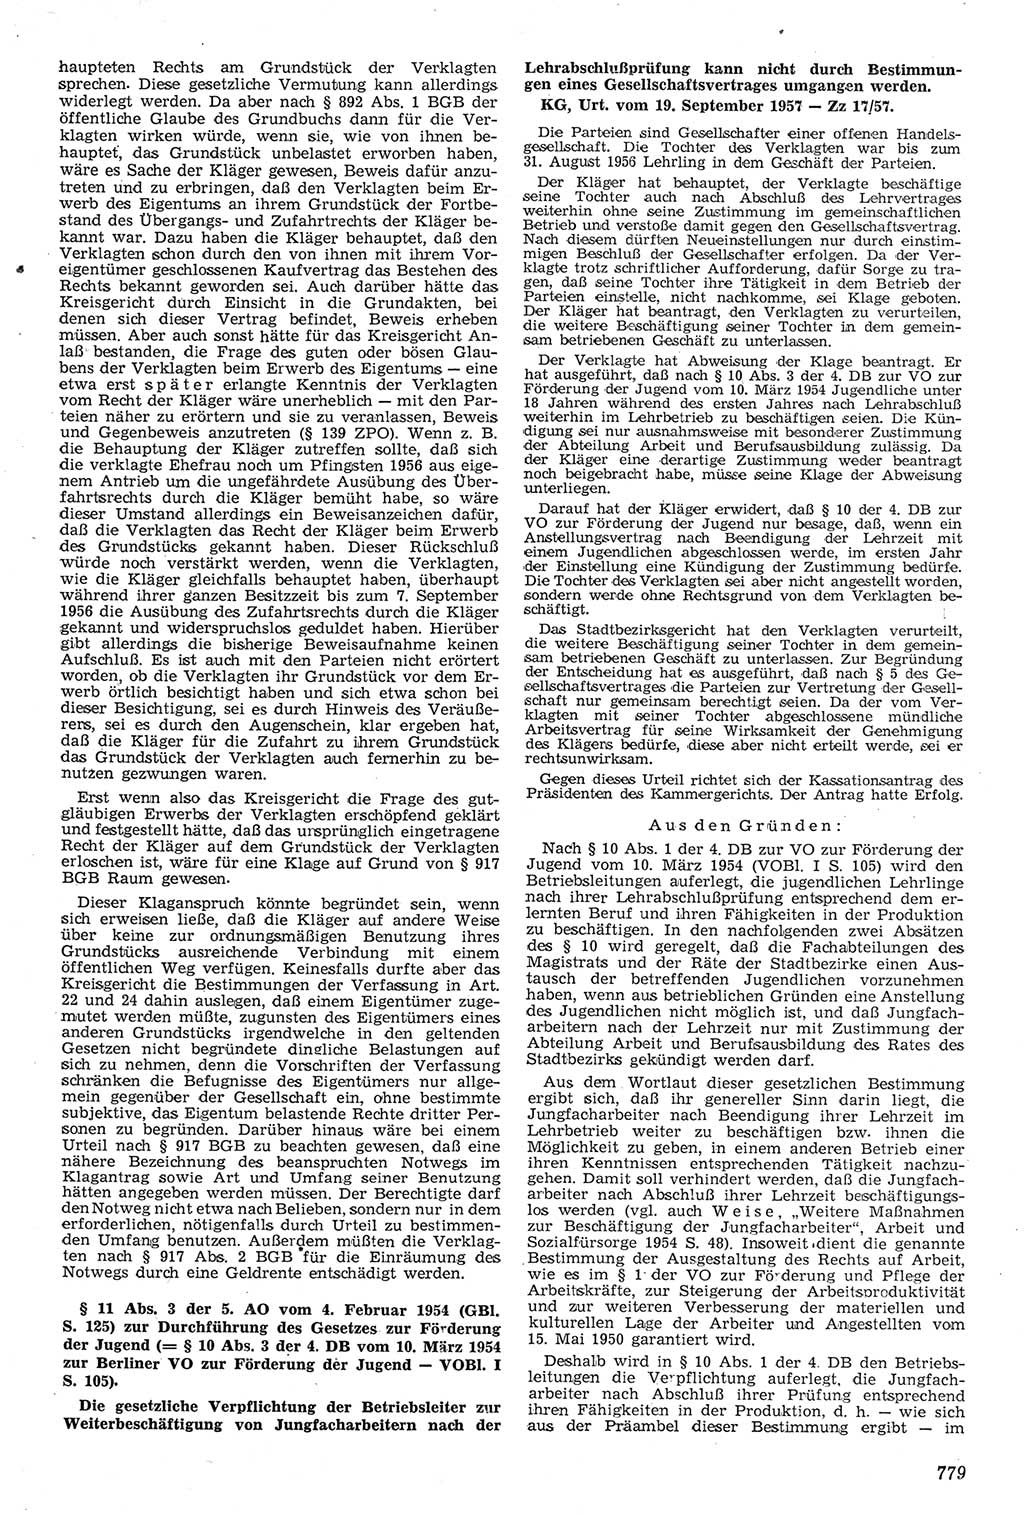 Neue Justiz (NJ), Zeitschrift für Recht und Rechtswissenschaft [Deutsche Demokratische Republik (DDR)], 11. Jahrgang 1957, Seite 779 (NJ DDR 1957, S. 779)